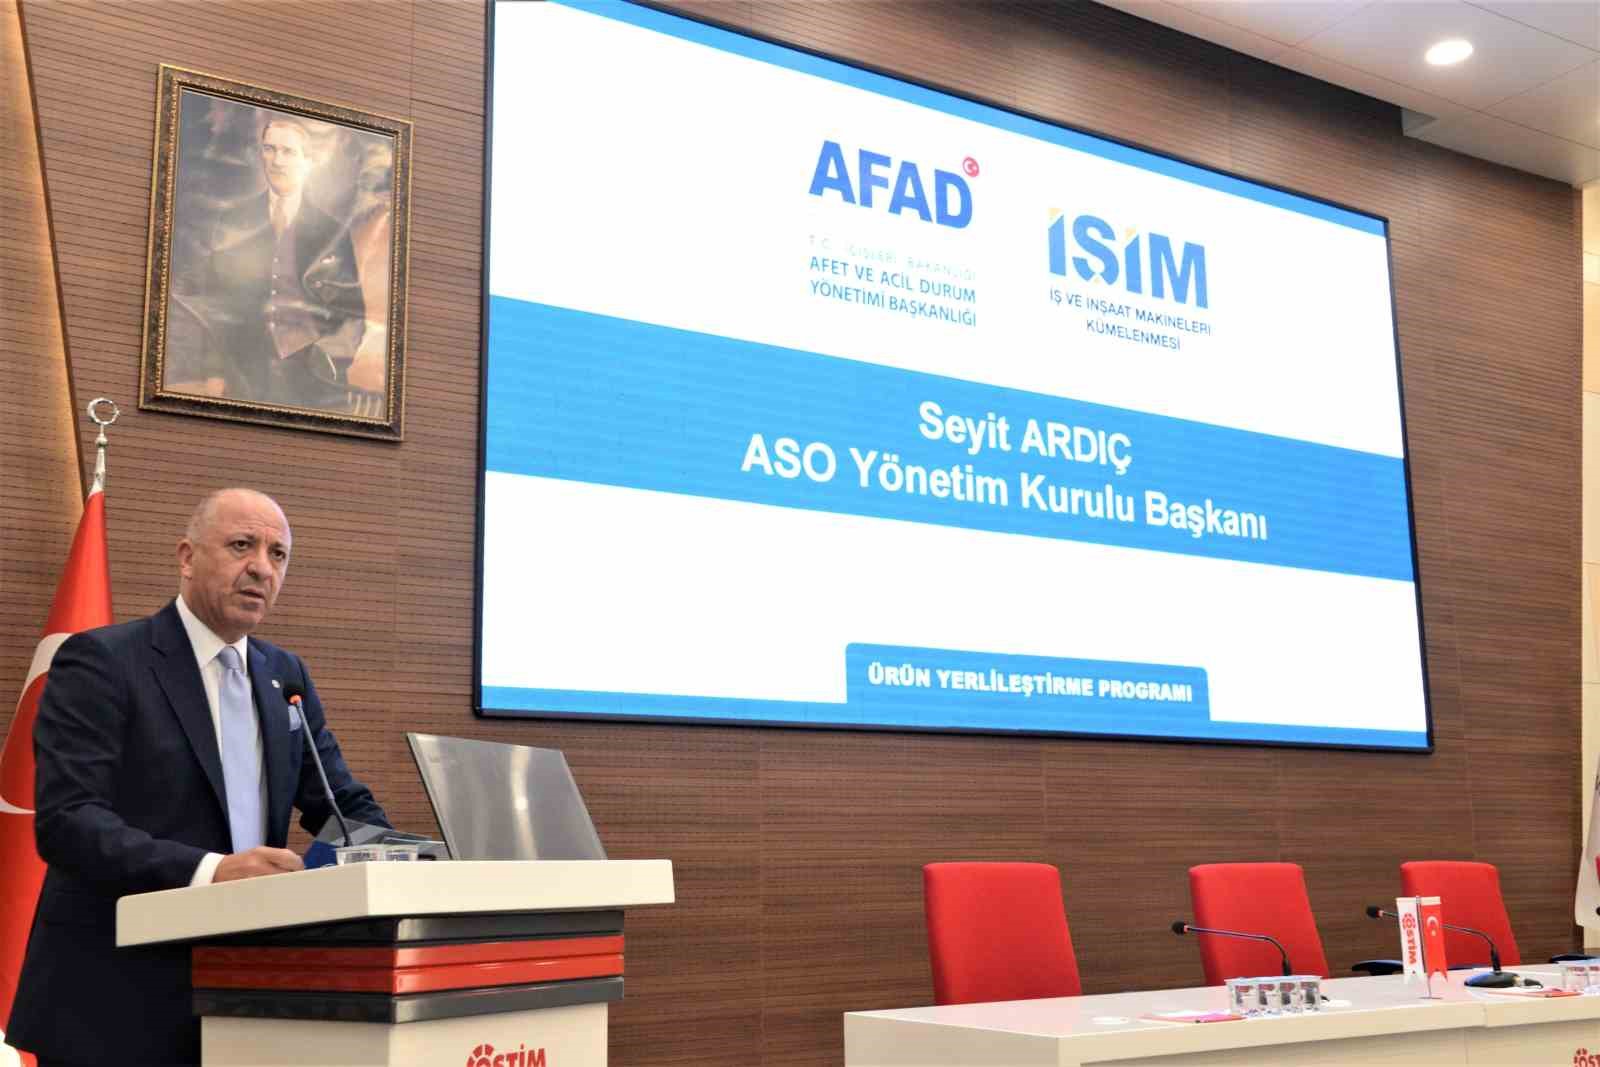 ASO Yönetim Kurulu Başkanı Ardıç: “AFAD ve iş dünyası işbirliği ürün tedarikinde kritik öneme sahip”